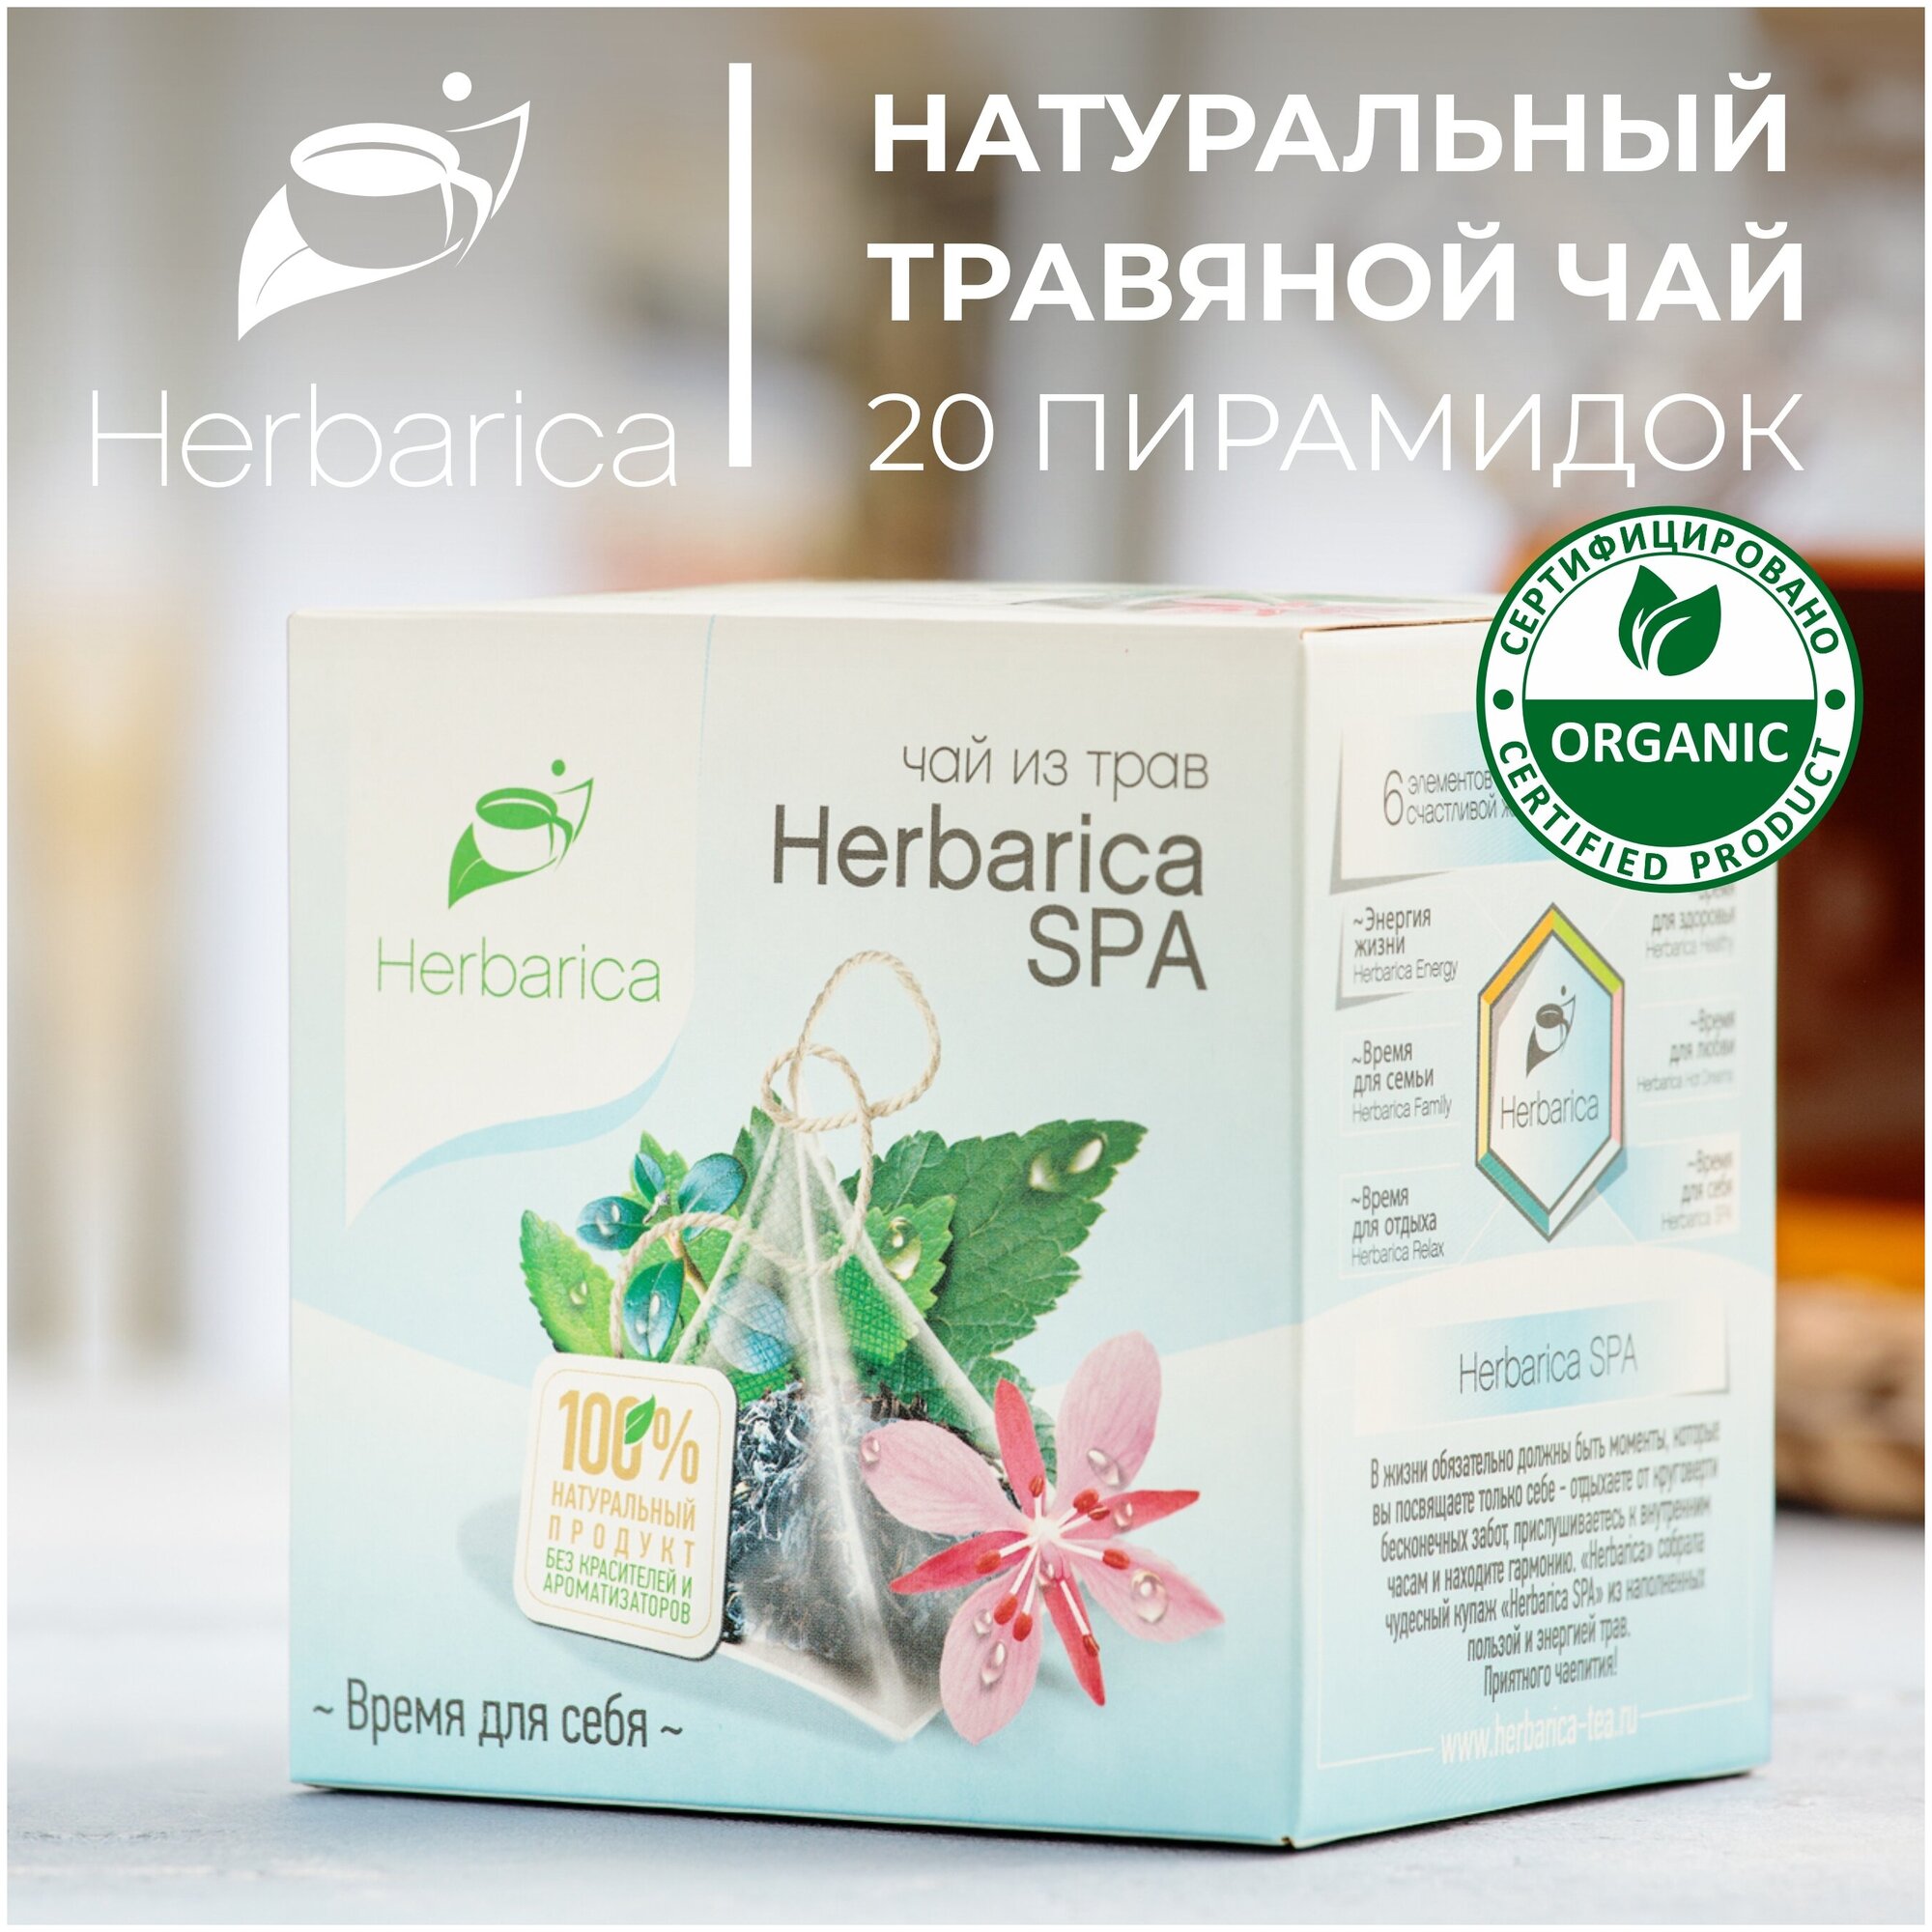 SPA Гербарика Время для себя травяной чай в пирамидках листья смородины, земляники, брусники, мята, чабрец, ромашка, иван-чай, календула, шалфей